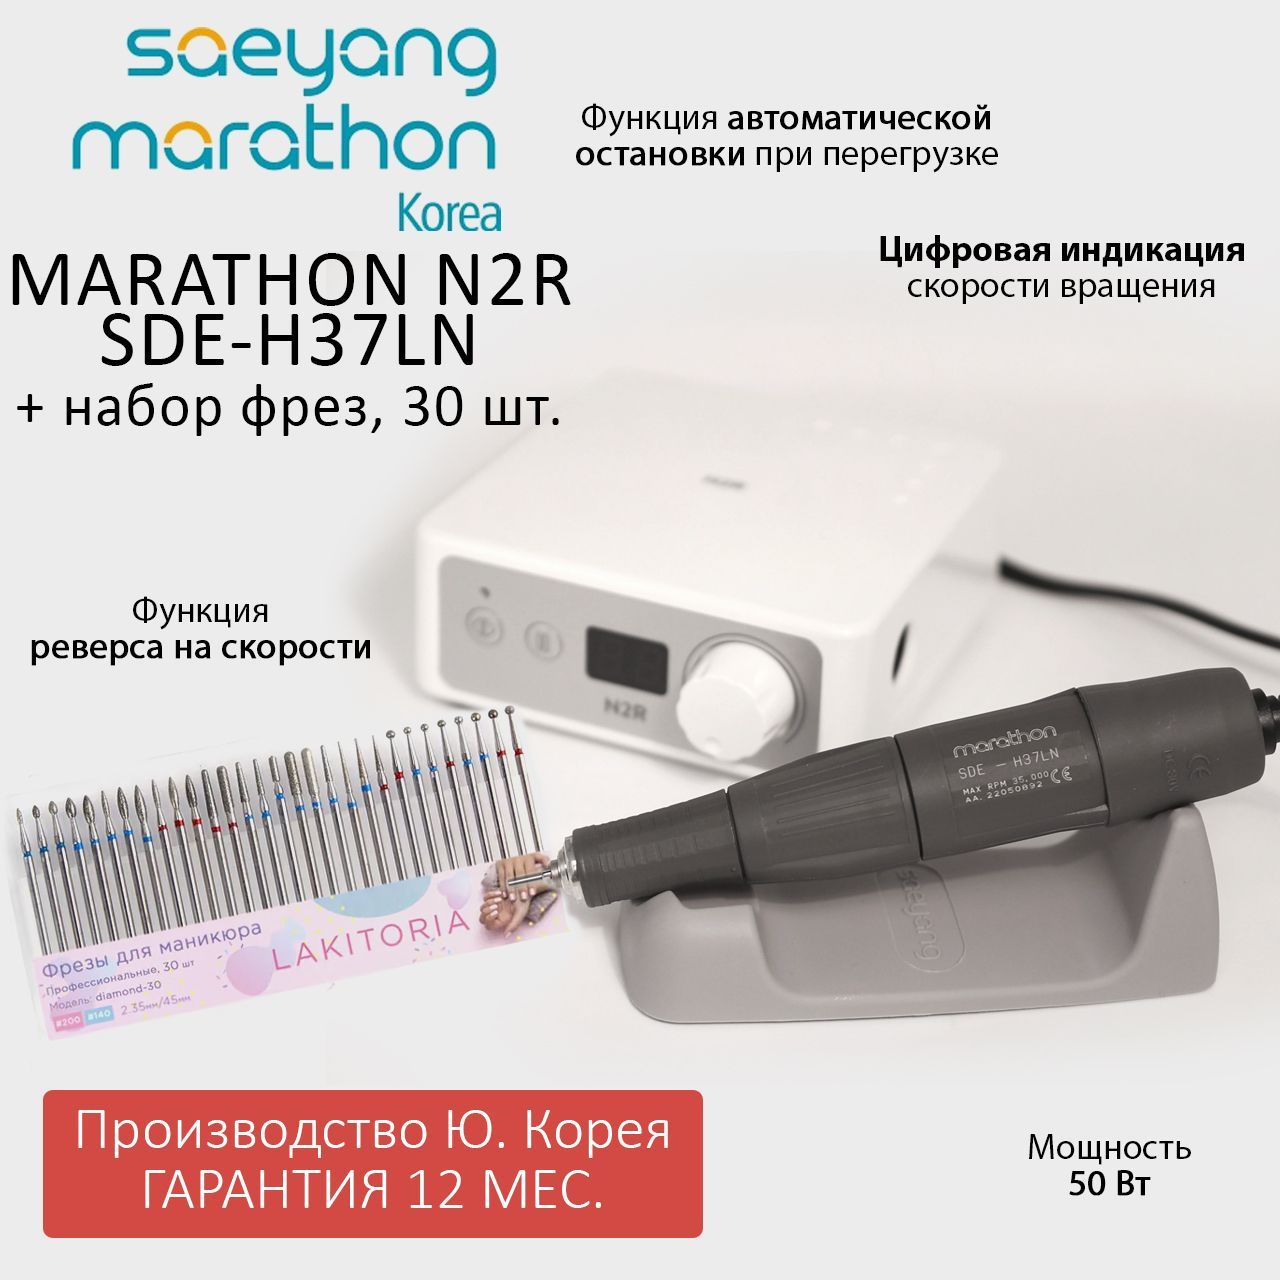 Аппарат для маникюра Marathon N2R SDE-H37LN без педали и набор фрез для маникюра 30шт летательные аппараты от аэростатов до дронов